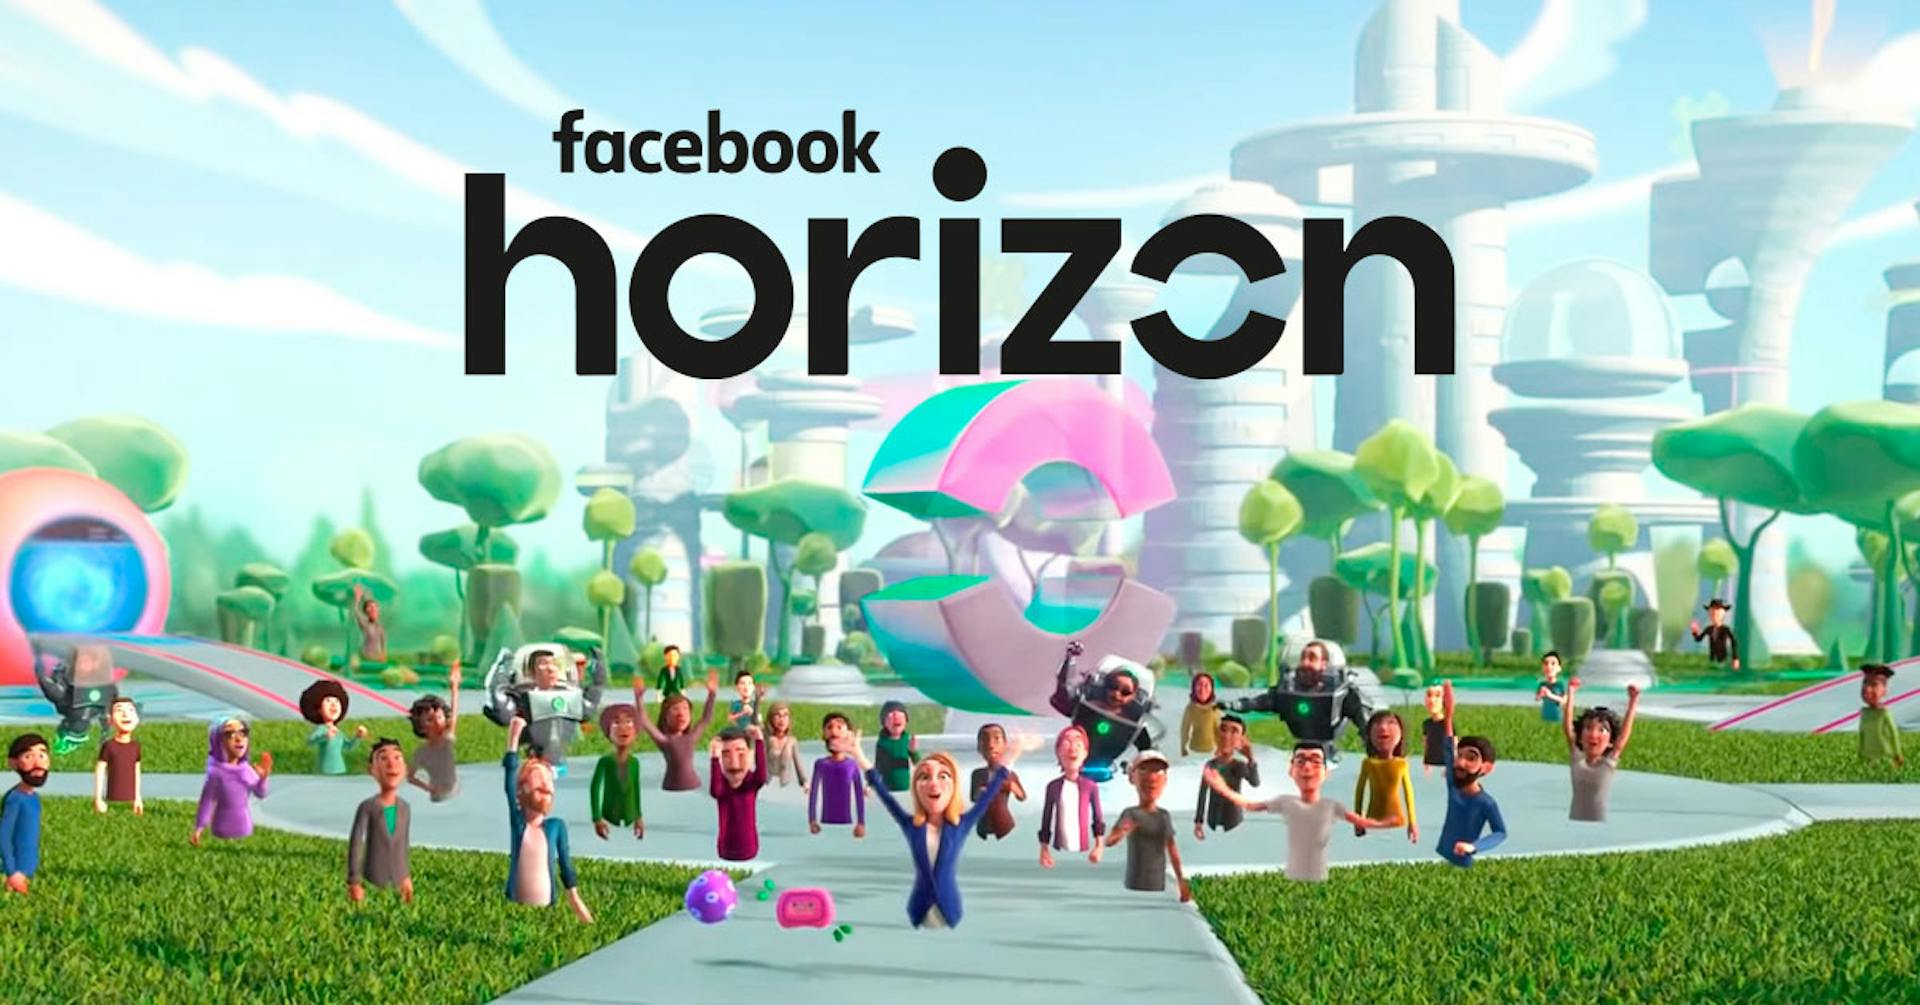 Ya existe un universo virtual en Facebook. Se llama Facebook Horizon, conócelo aquí